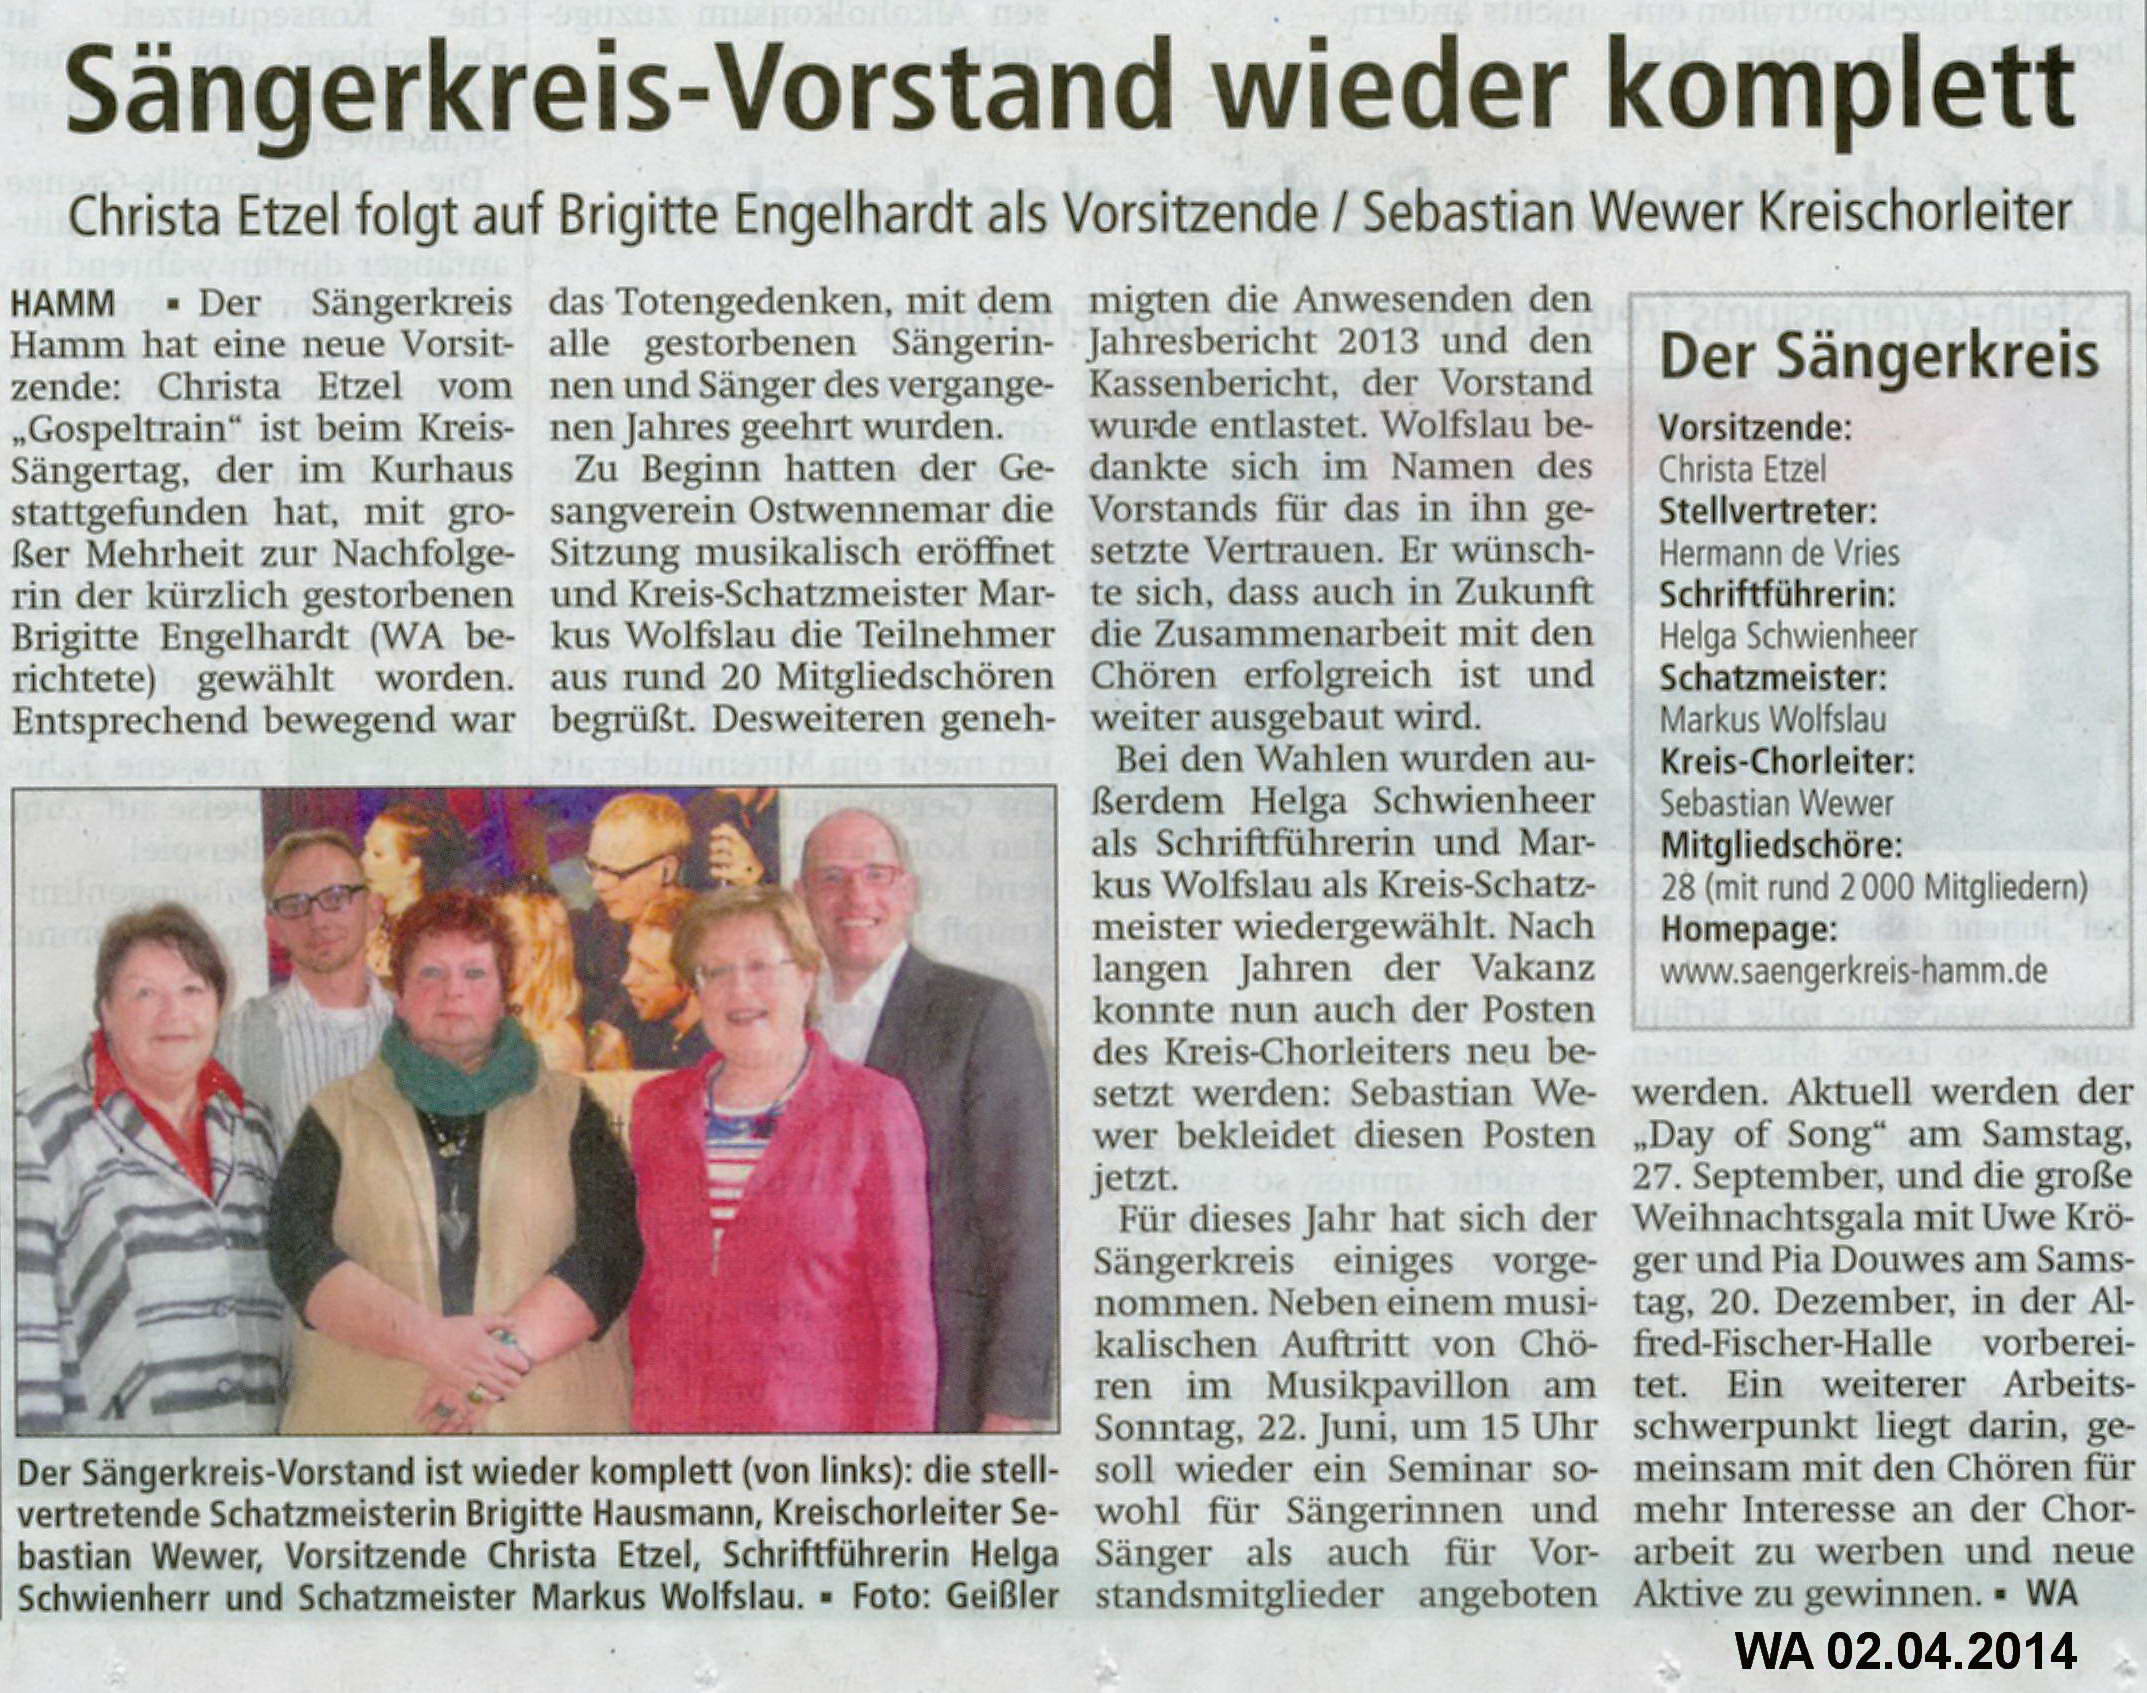 © Westfälischer Anzeiger, Hamm, 02.04.2014